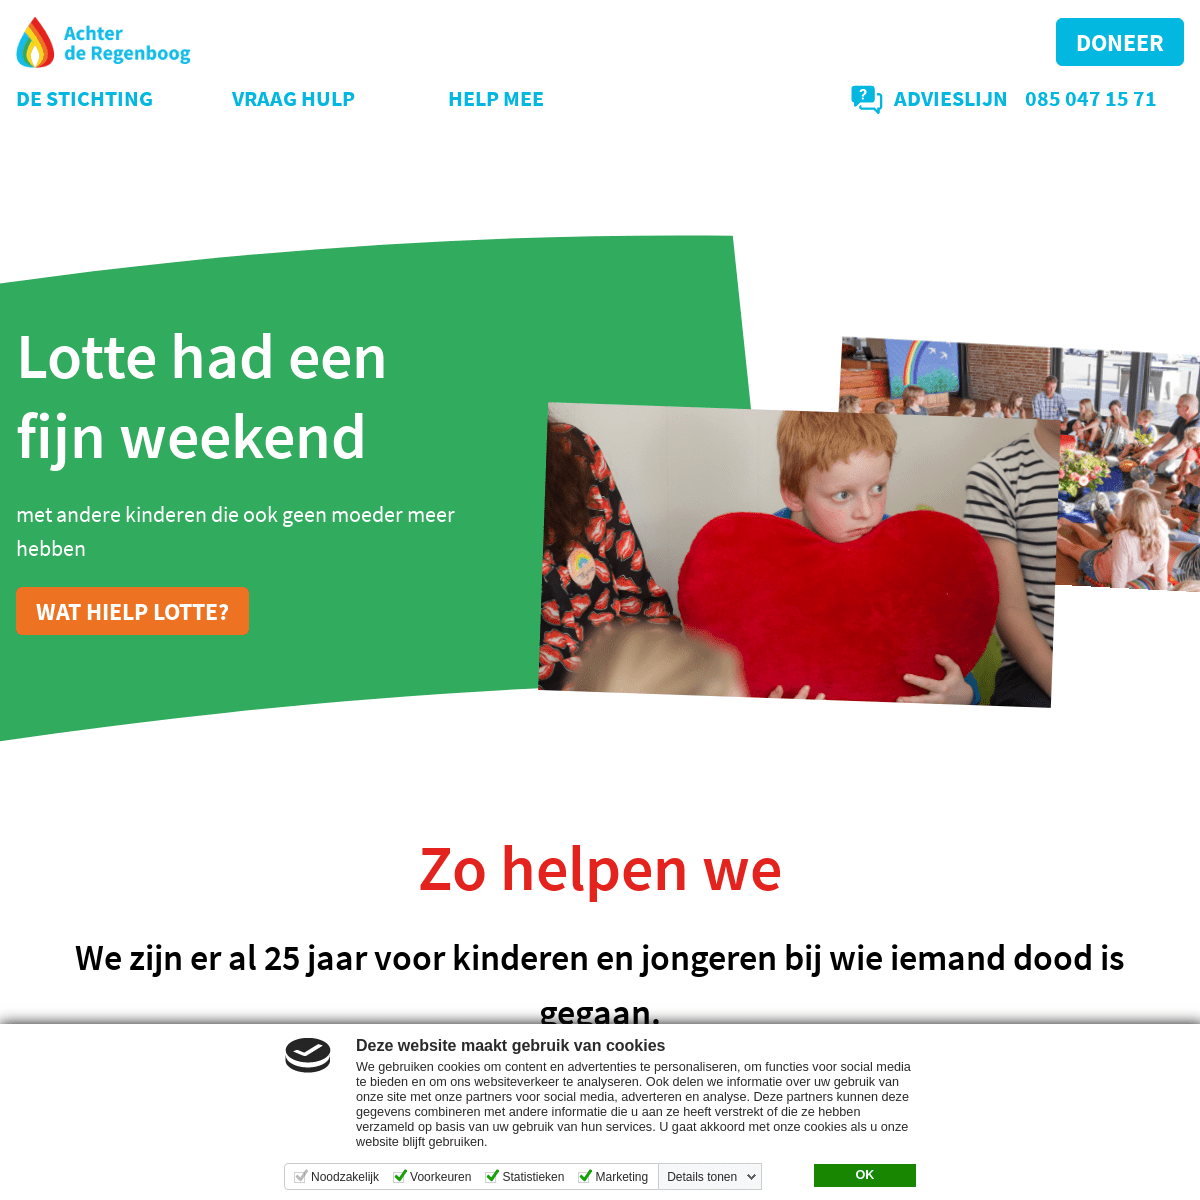 A complete backup of https://achterderegenboog.nl